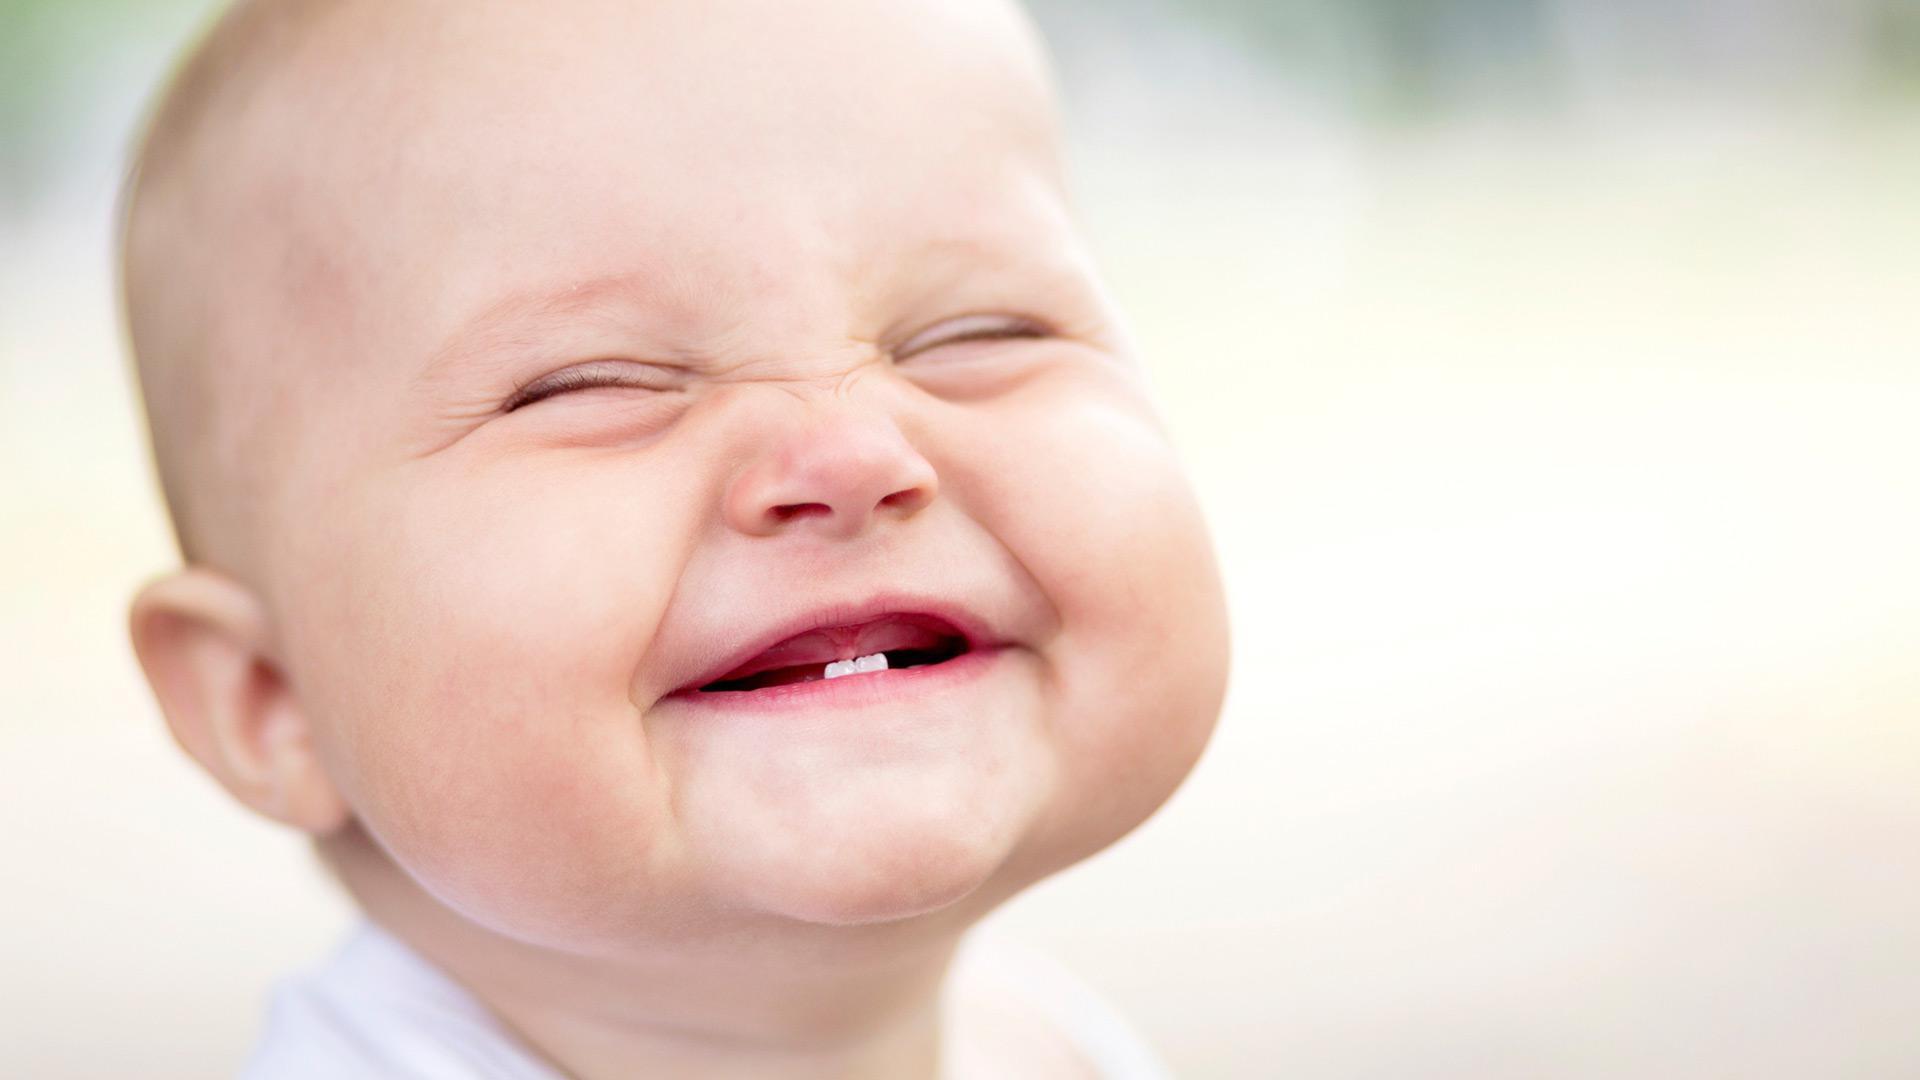 Em bé cười lộ đúng hai cái răng chuột ngược